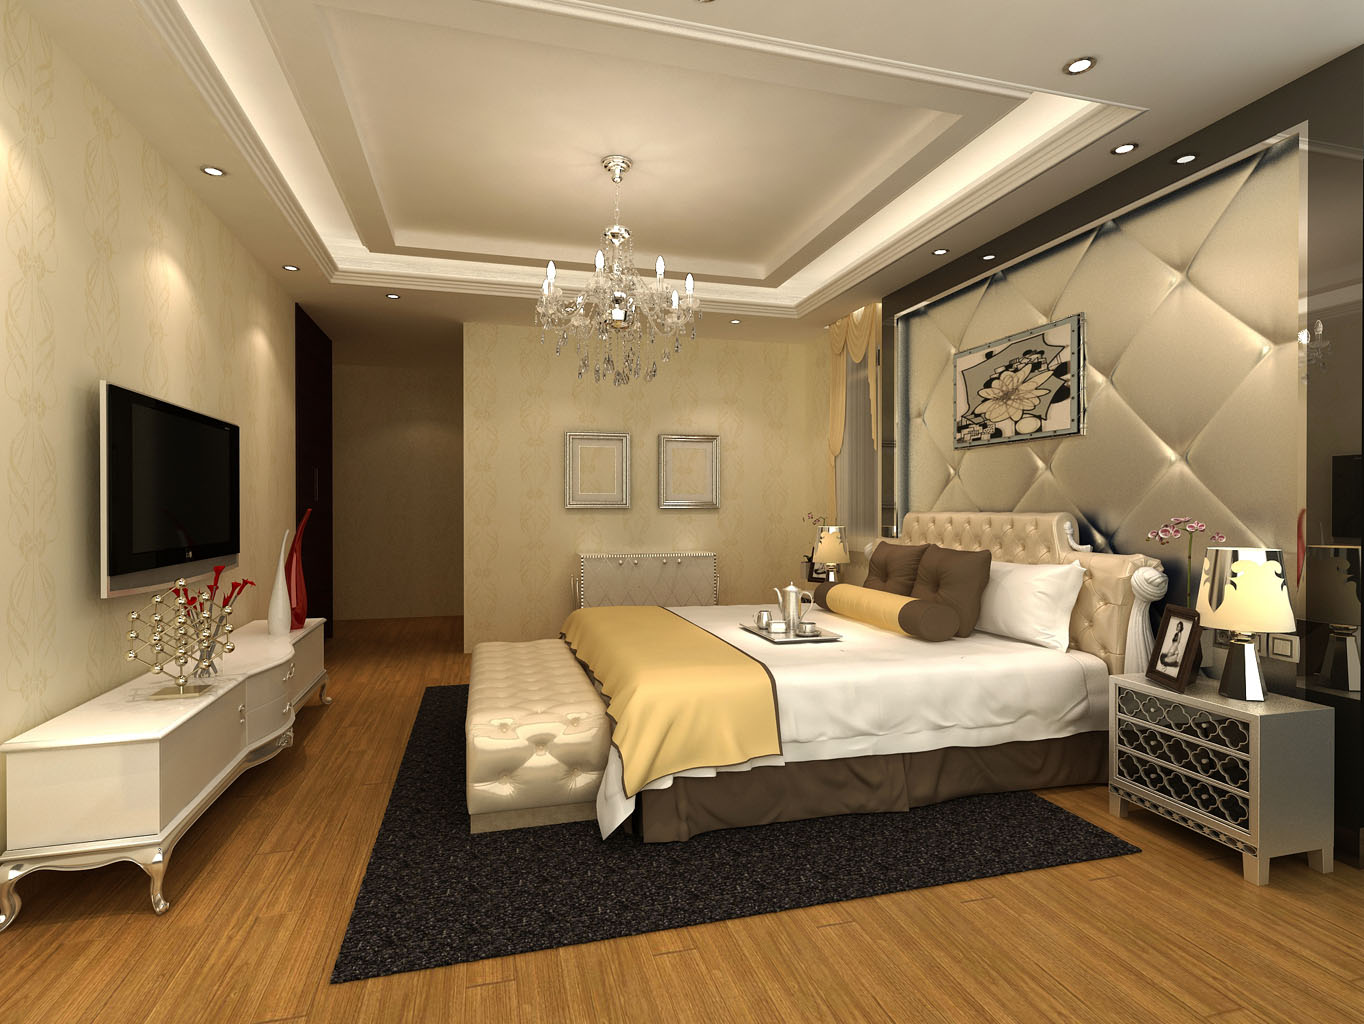 三居 欧式 可逸江畔 145平米 新房装修 卧室图片来自传承正能量在31.9万的简约时尚的温馨家庭的分享